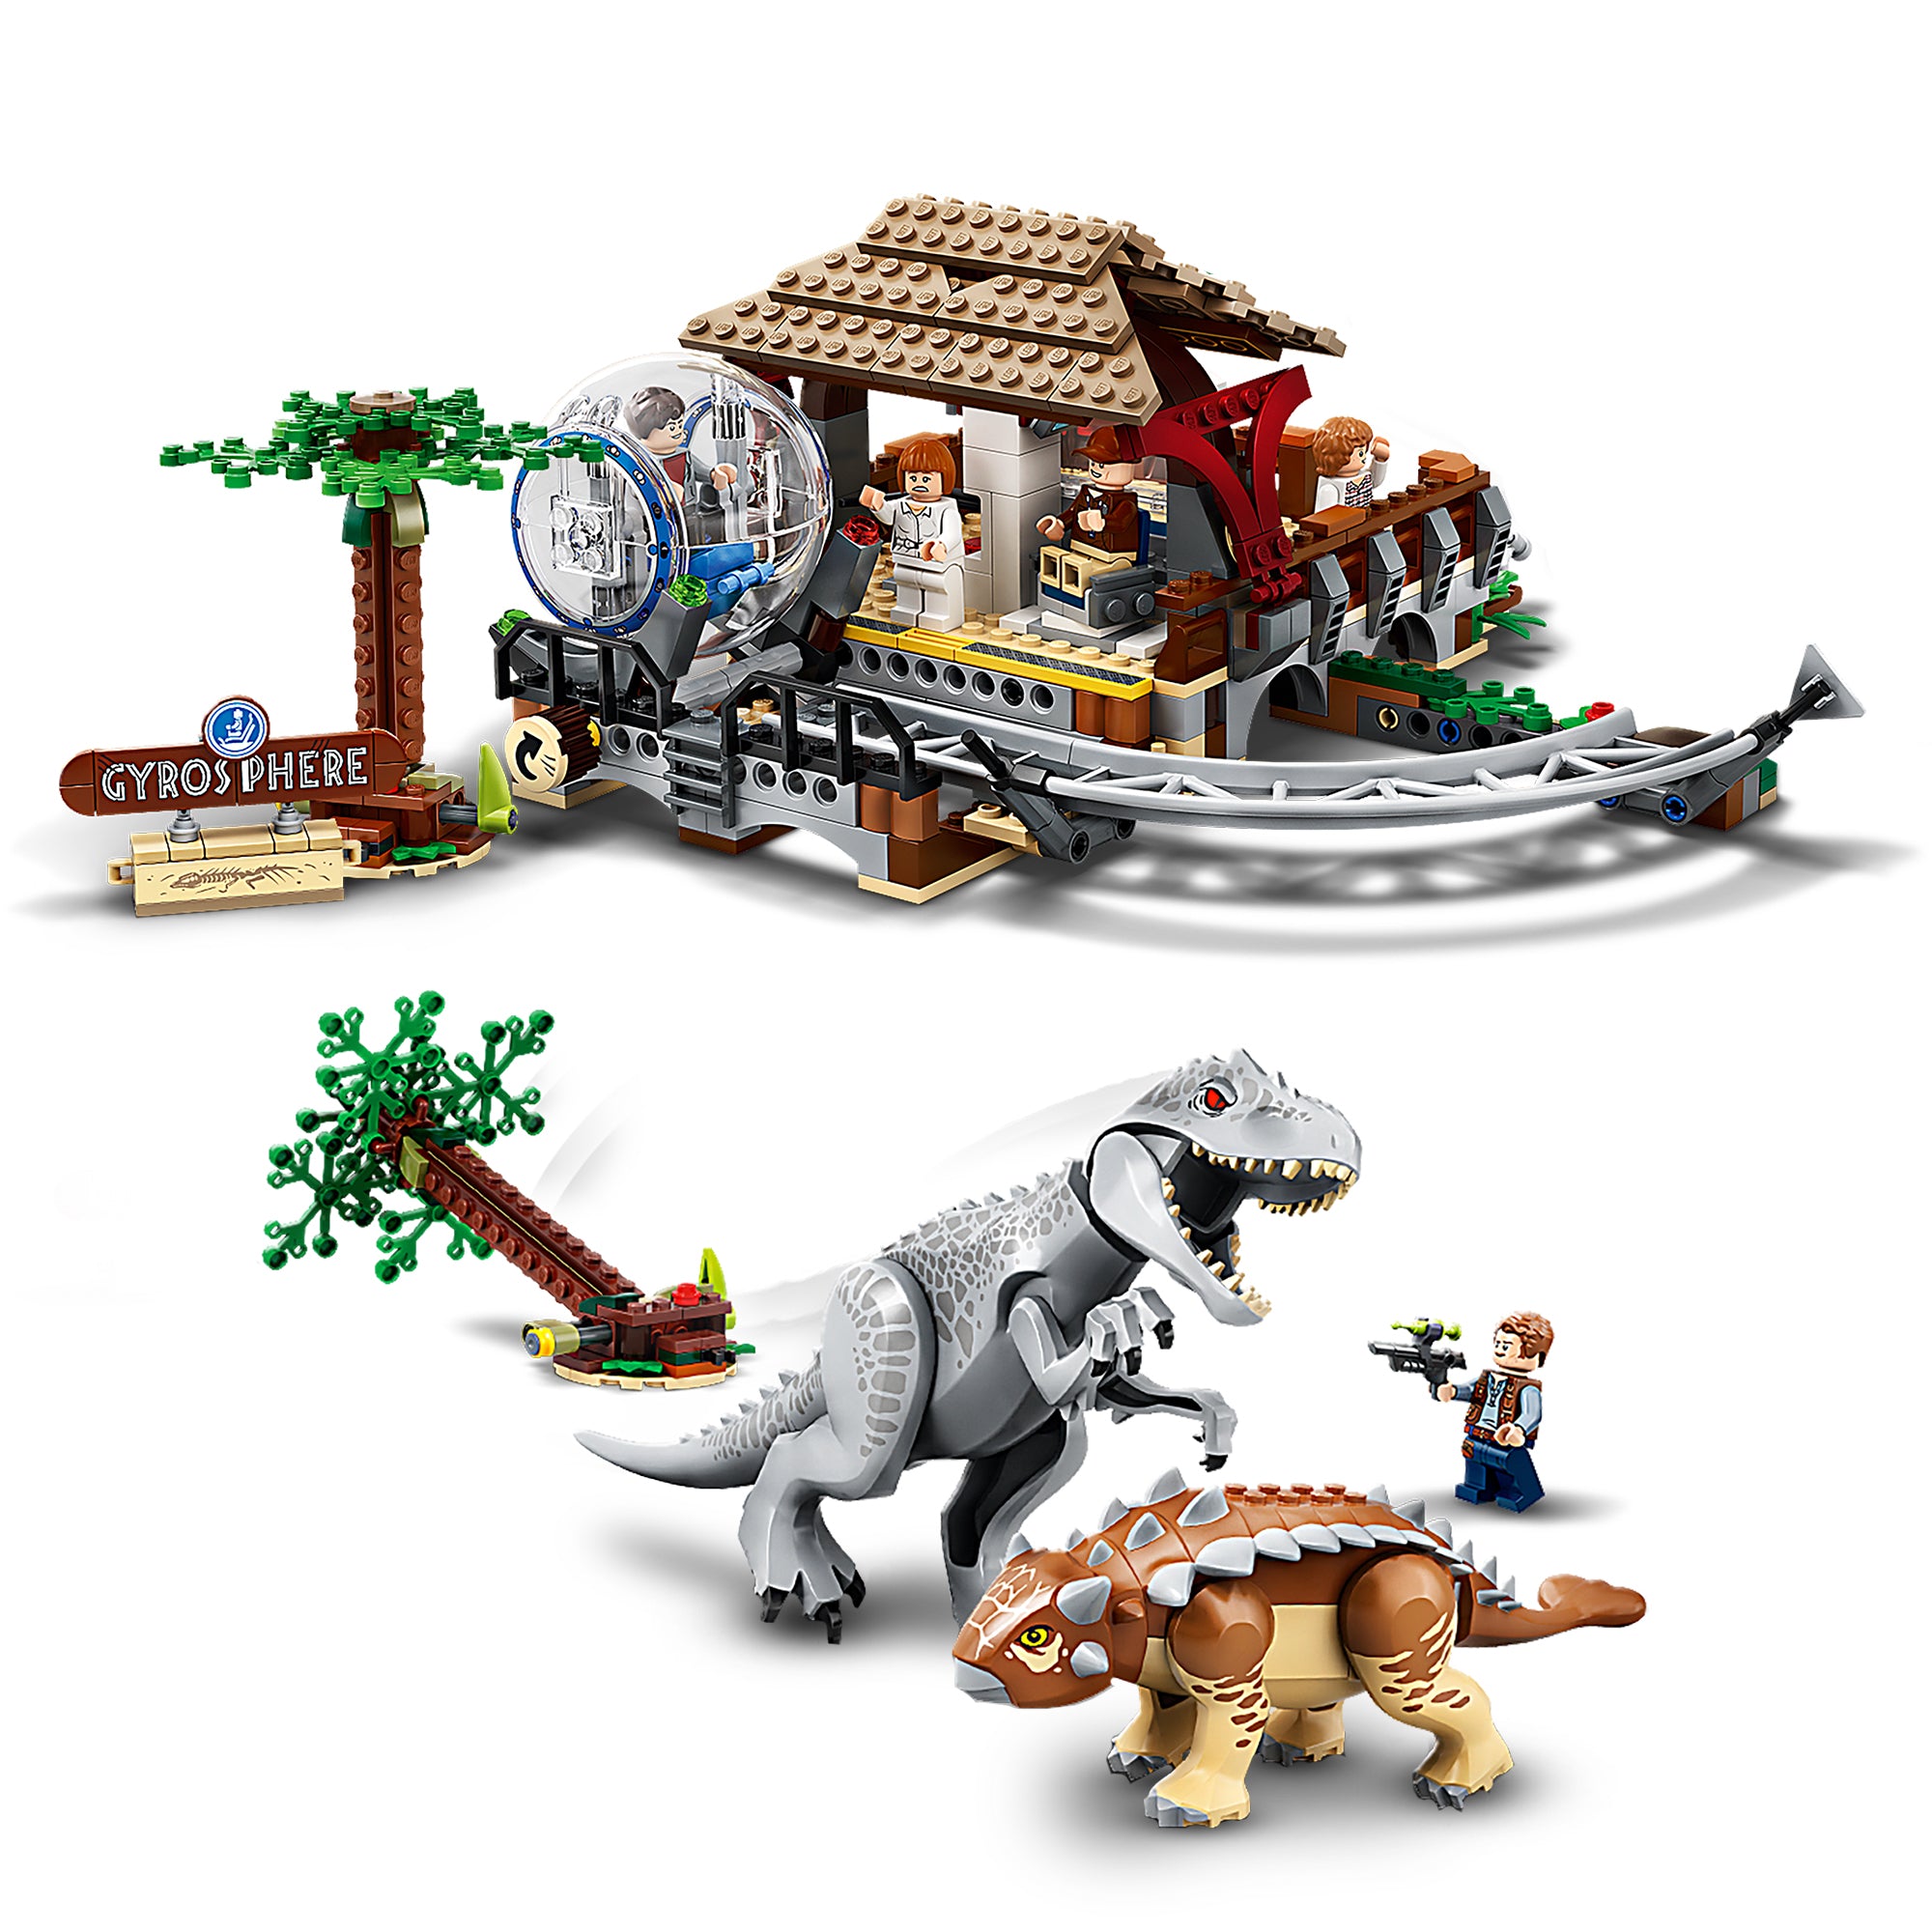 LEGO® Jurassic World Indominus Rex Dinosaur Toy 75941 Default Title